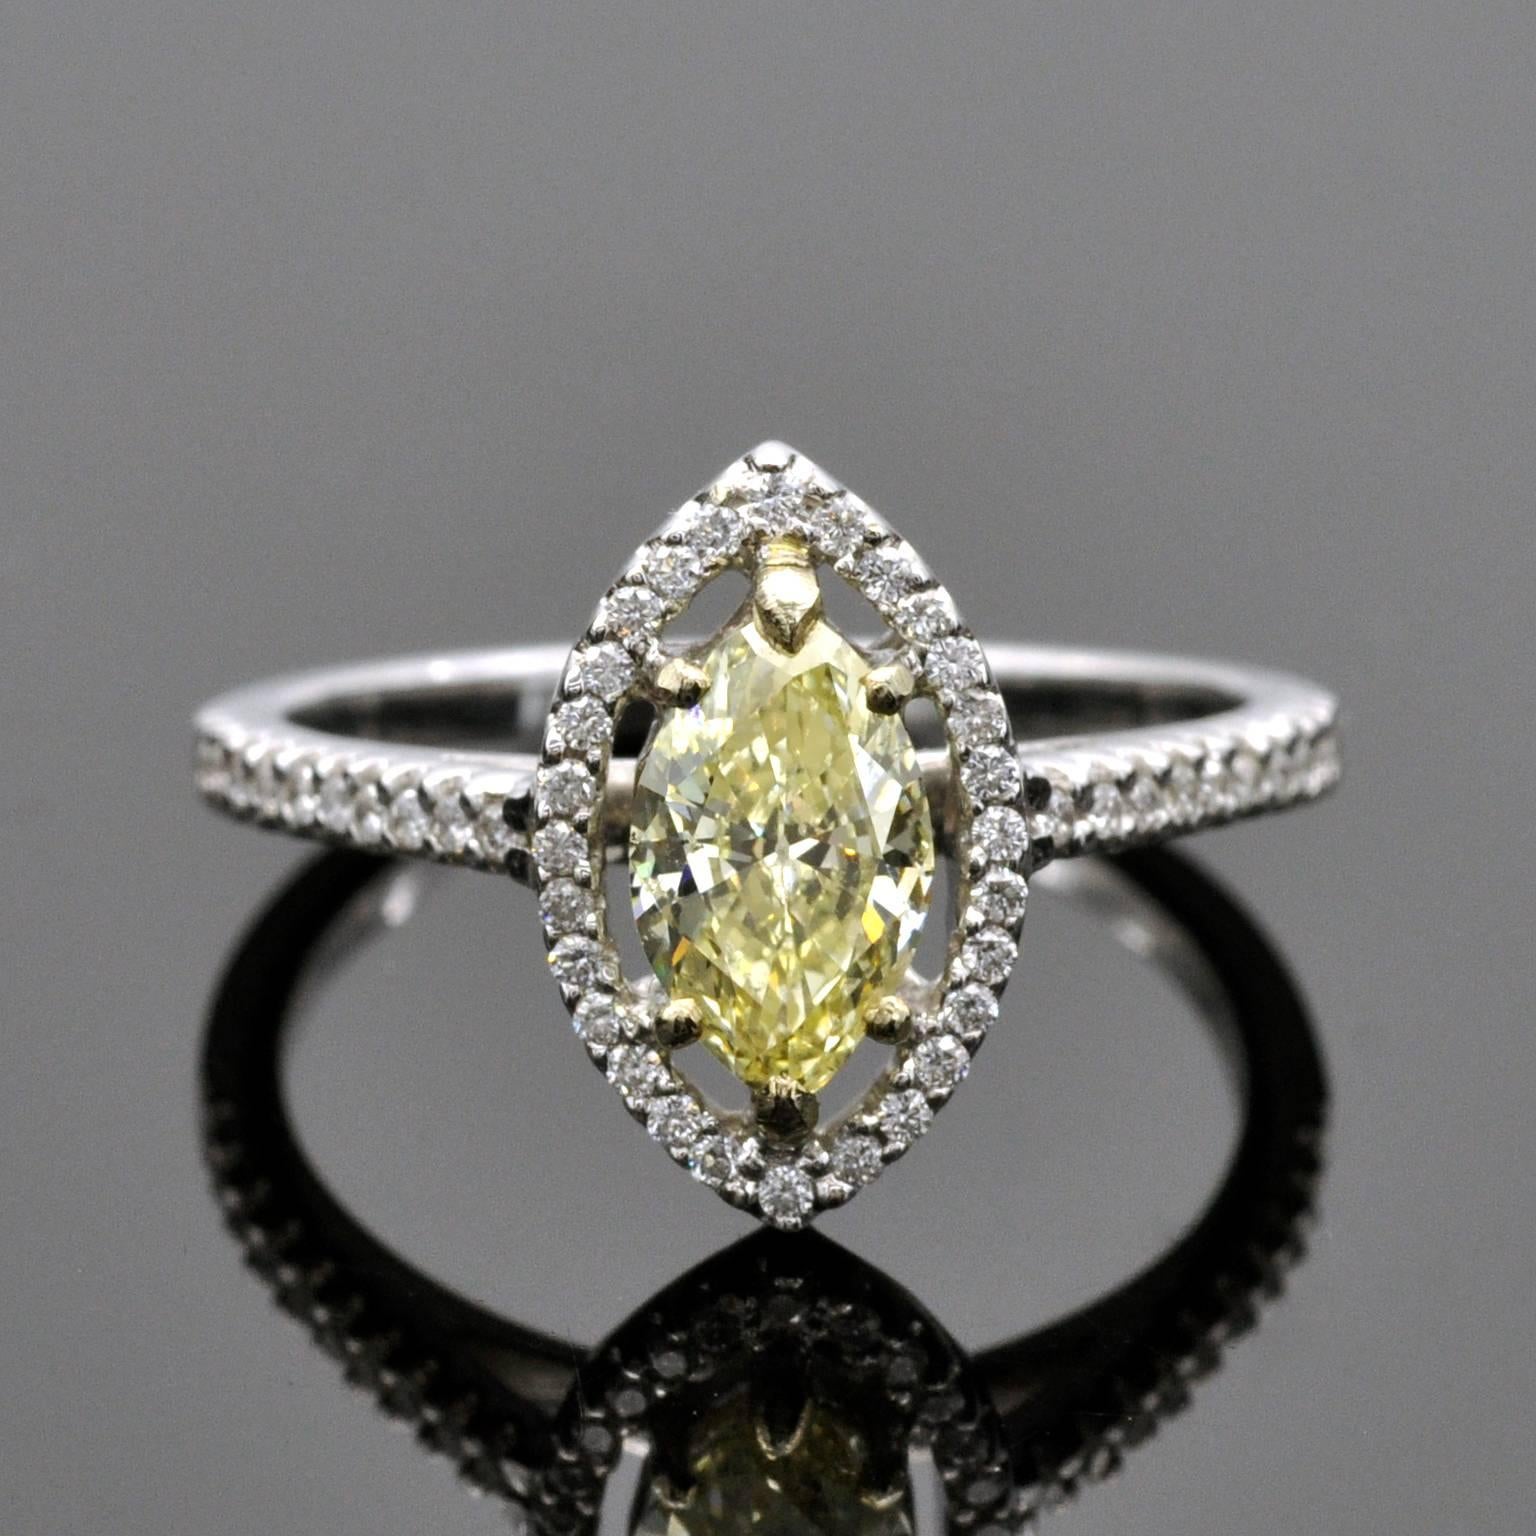 Le diamant central, un diamant jaune fantaisie taille marquise de 0,79 carat, serti dans une bague halo intemporelle en or blanc 18KT, est accompagné d'un certificat du très estimé laboratoire HRD en Belgique.
La bague est en parfait état et n'a